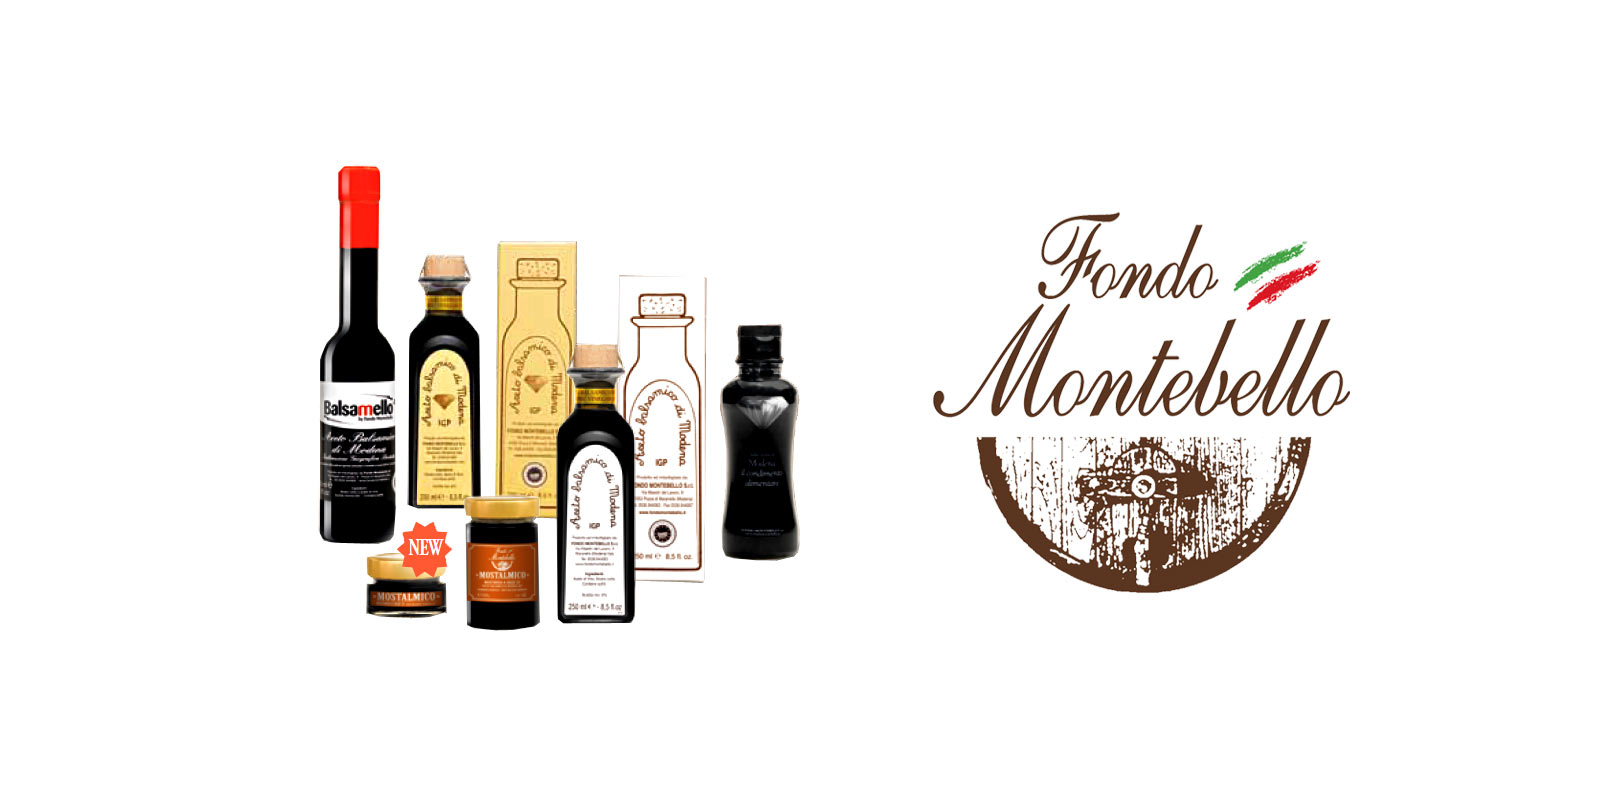 Aceto Balsamico Fondo Montebello Fondo Montebello menggunakan metode produksi kuno dan tradisional untuk menghasilkan cuka balsamic yang sangat baik dari wilayah Maranello di Italia.